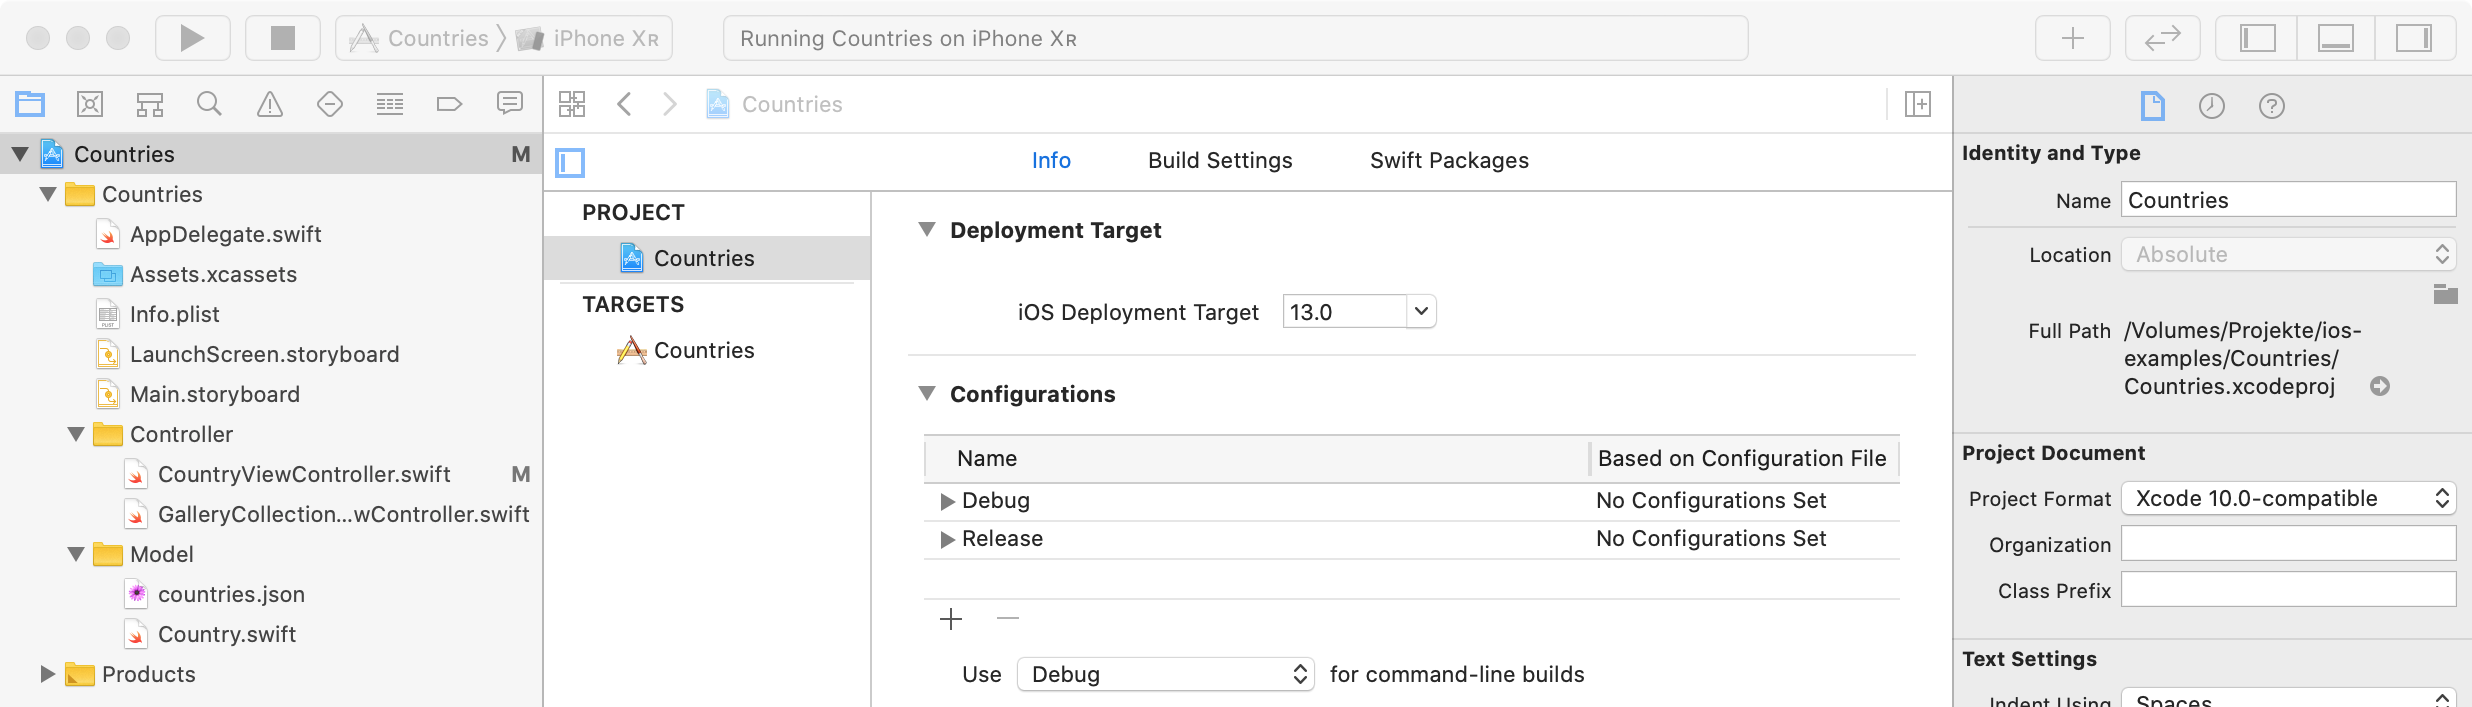 Deployment Target auf iOS 13 konfigurieren